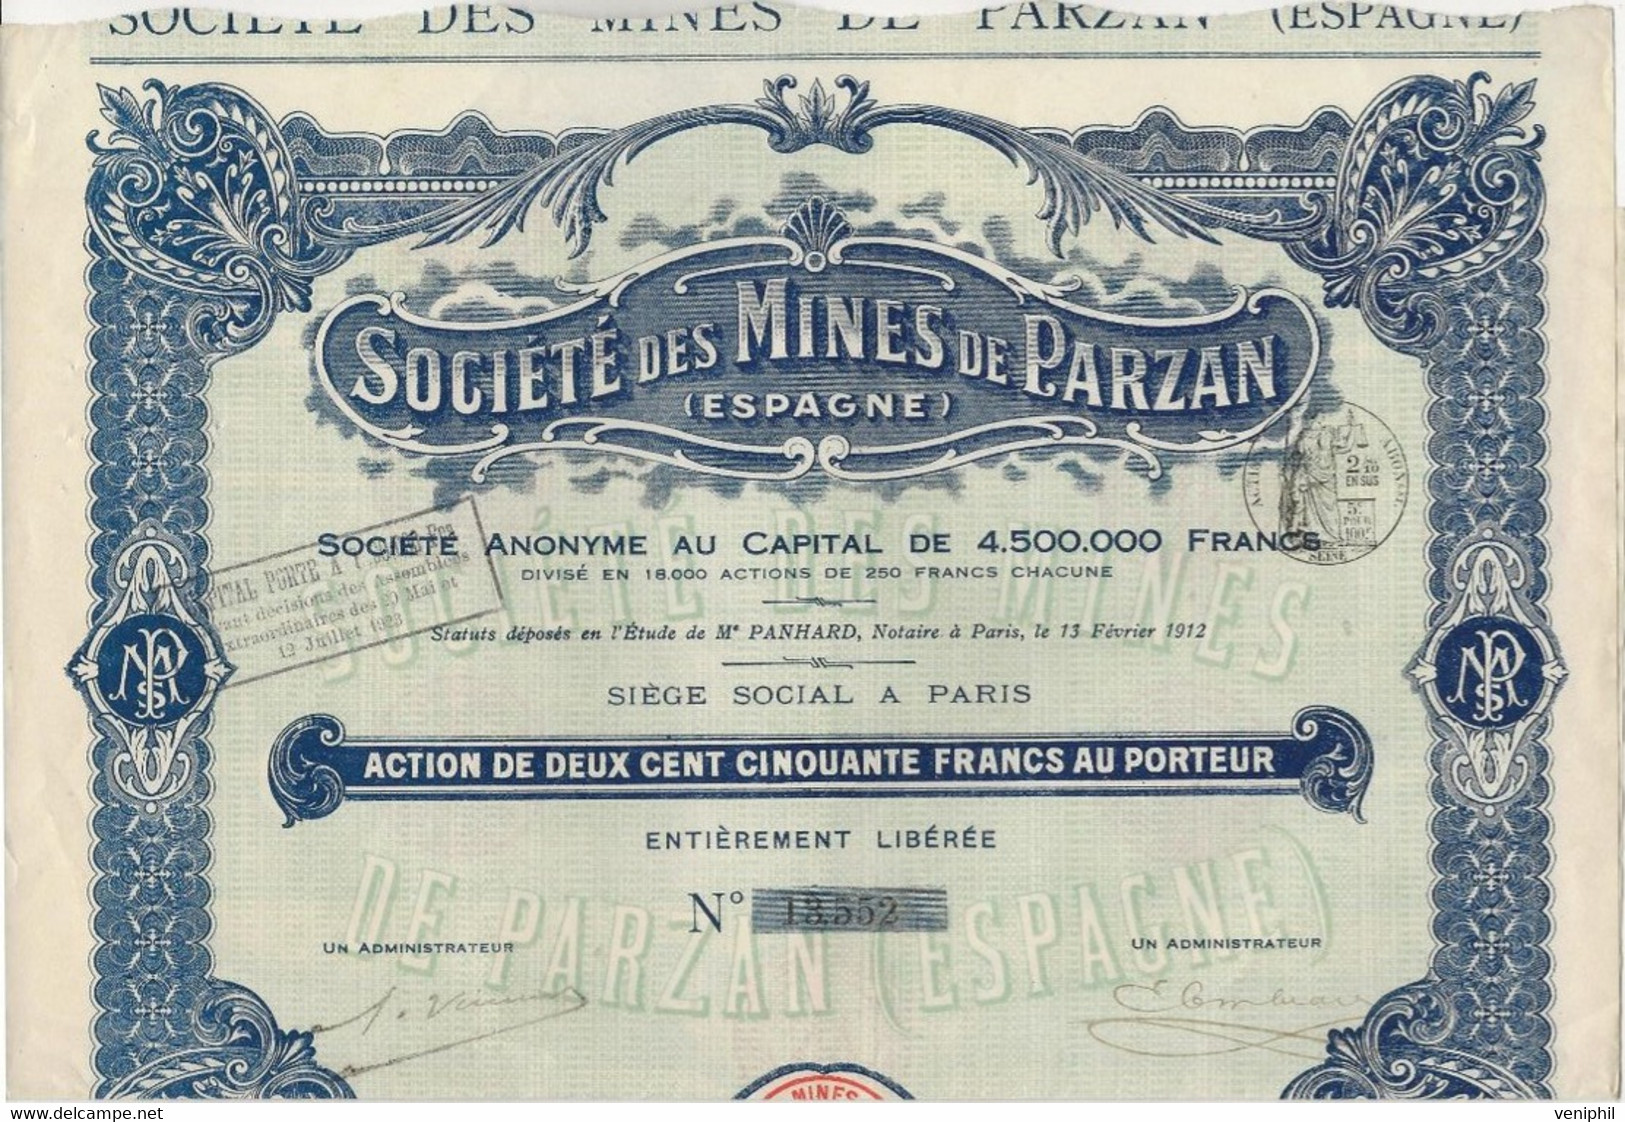 SOCIETE DE MINES DE PARZAN - ESPAGNE - ACTION DE 250 FRANCS  -1912 - Miniere